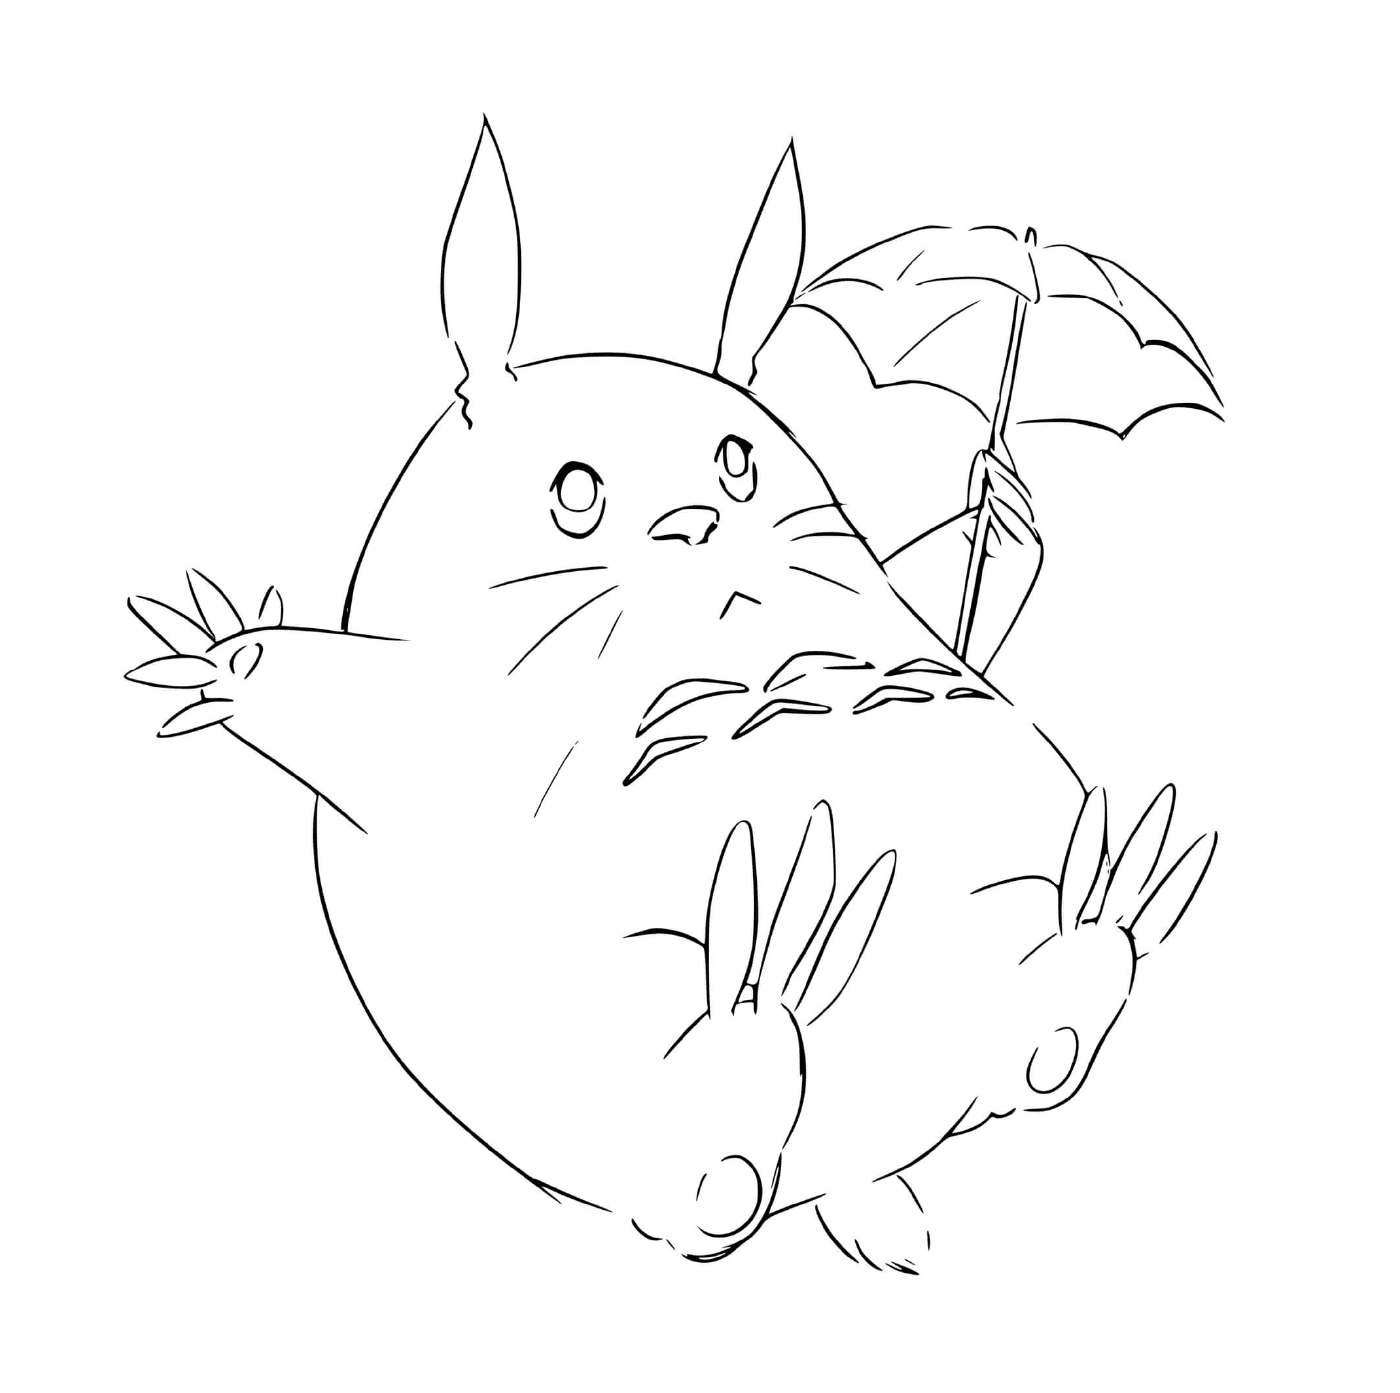  Totoro, der einen Schirm hält 